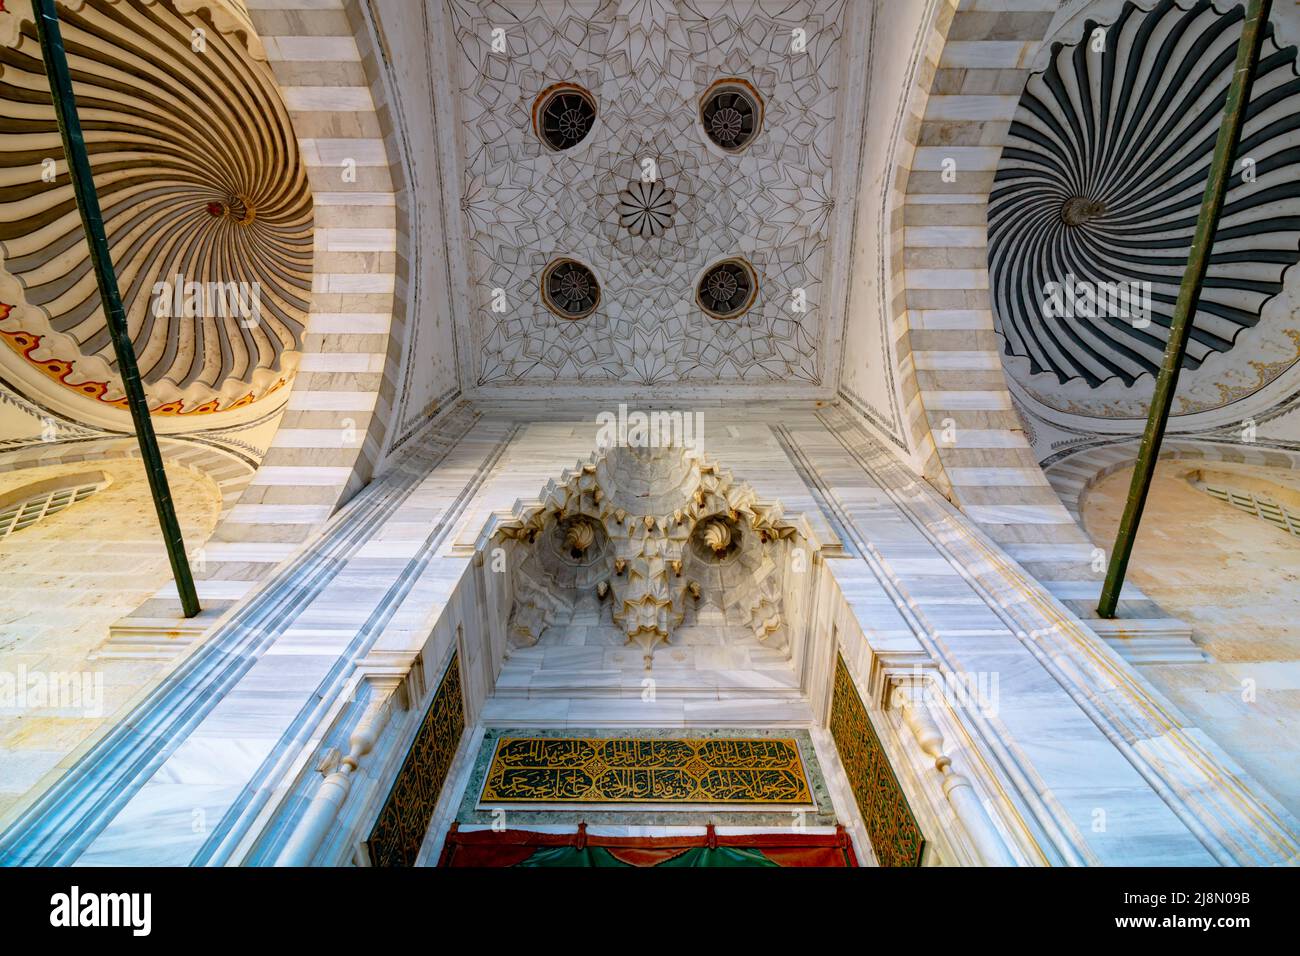 Décorations des dômes de la Mosquée Bayezid II à Edirne. Photo de fond de l'architecture islamique. Edirne Turquie - 10.25.2021 Banque D'Images